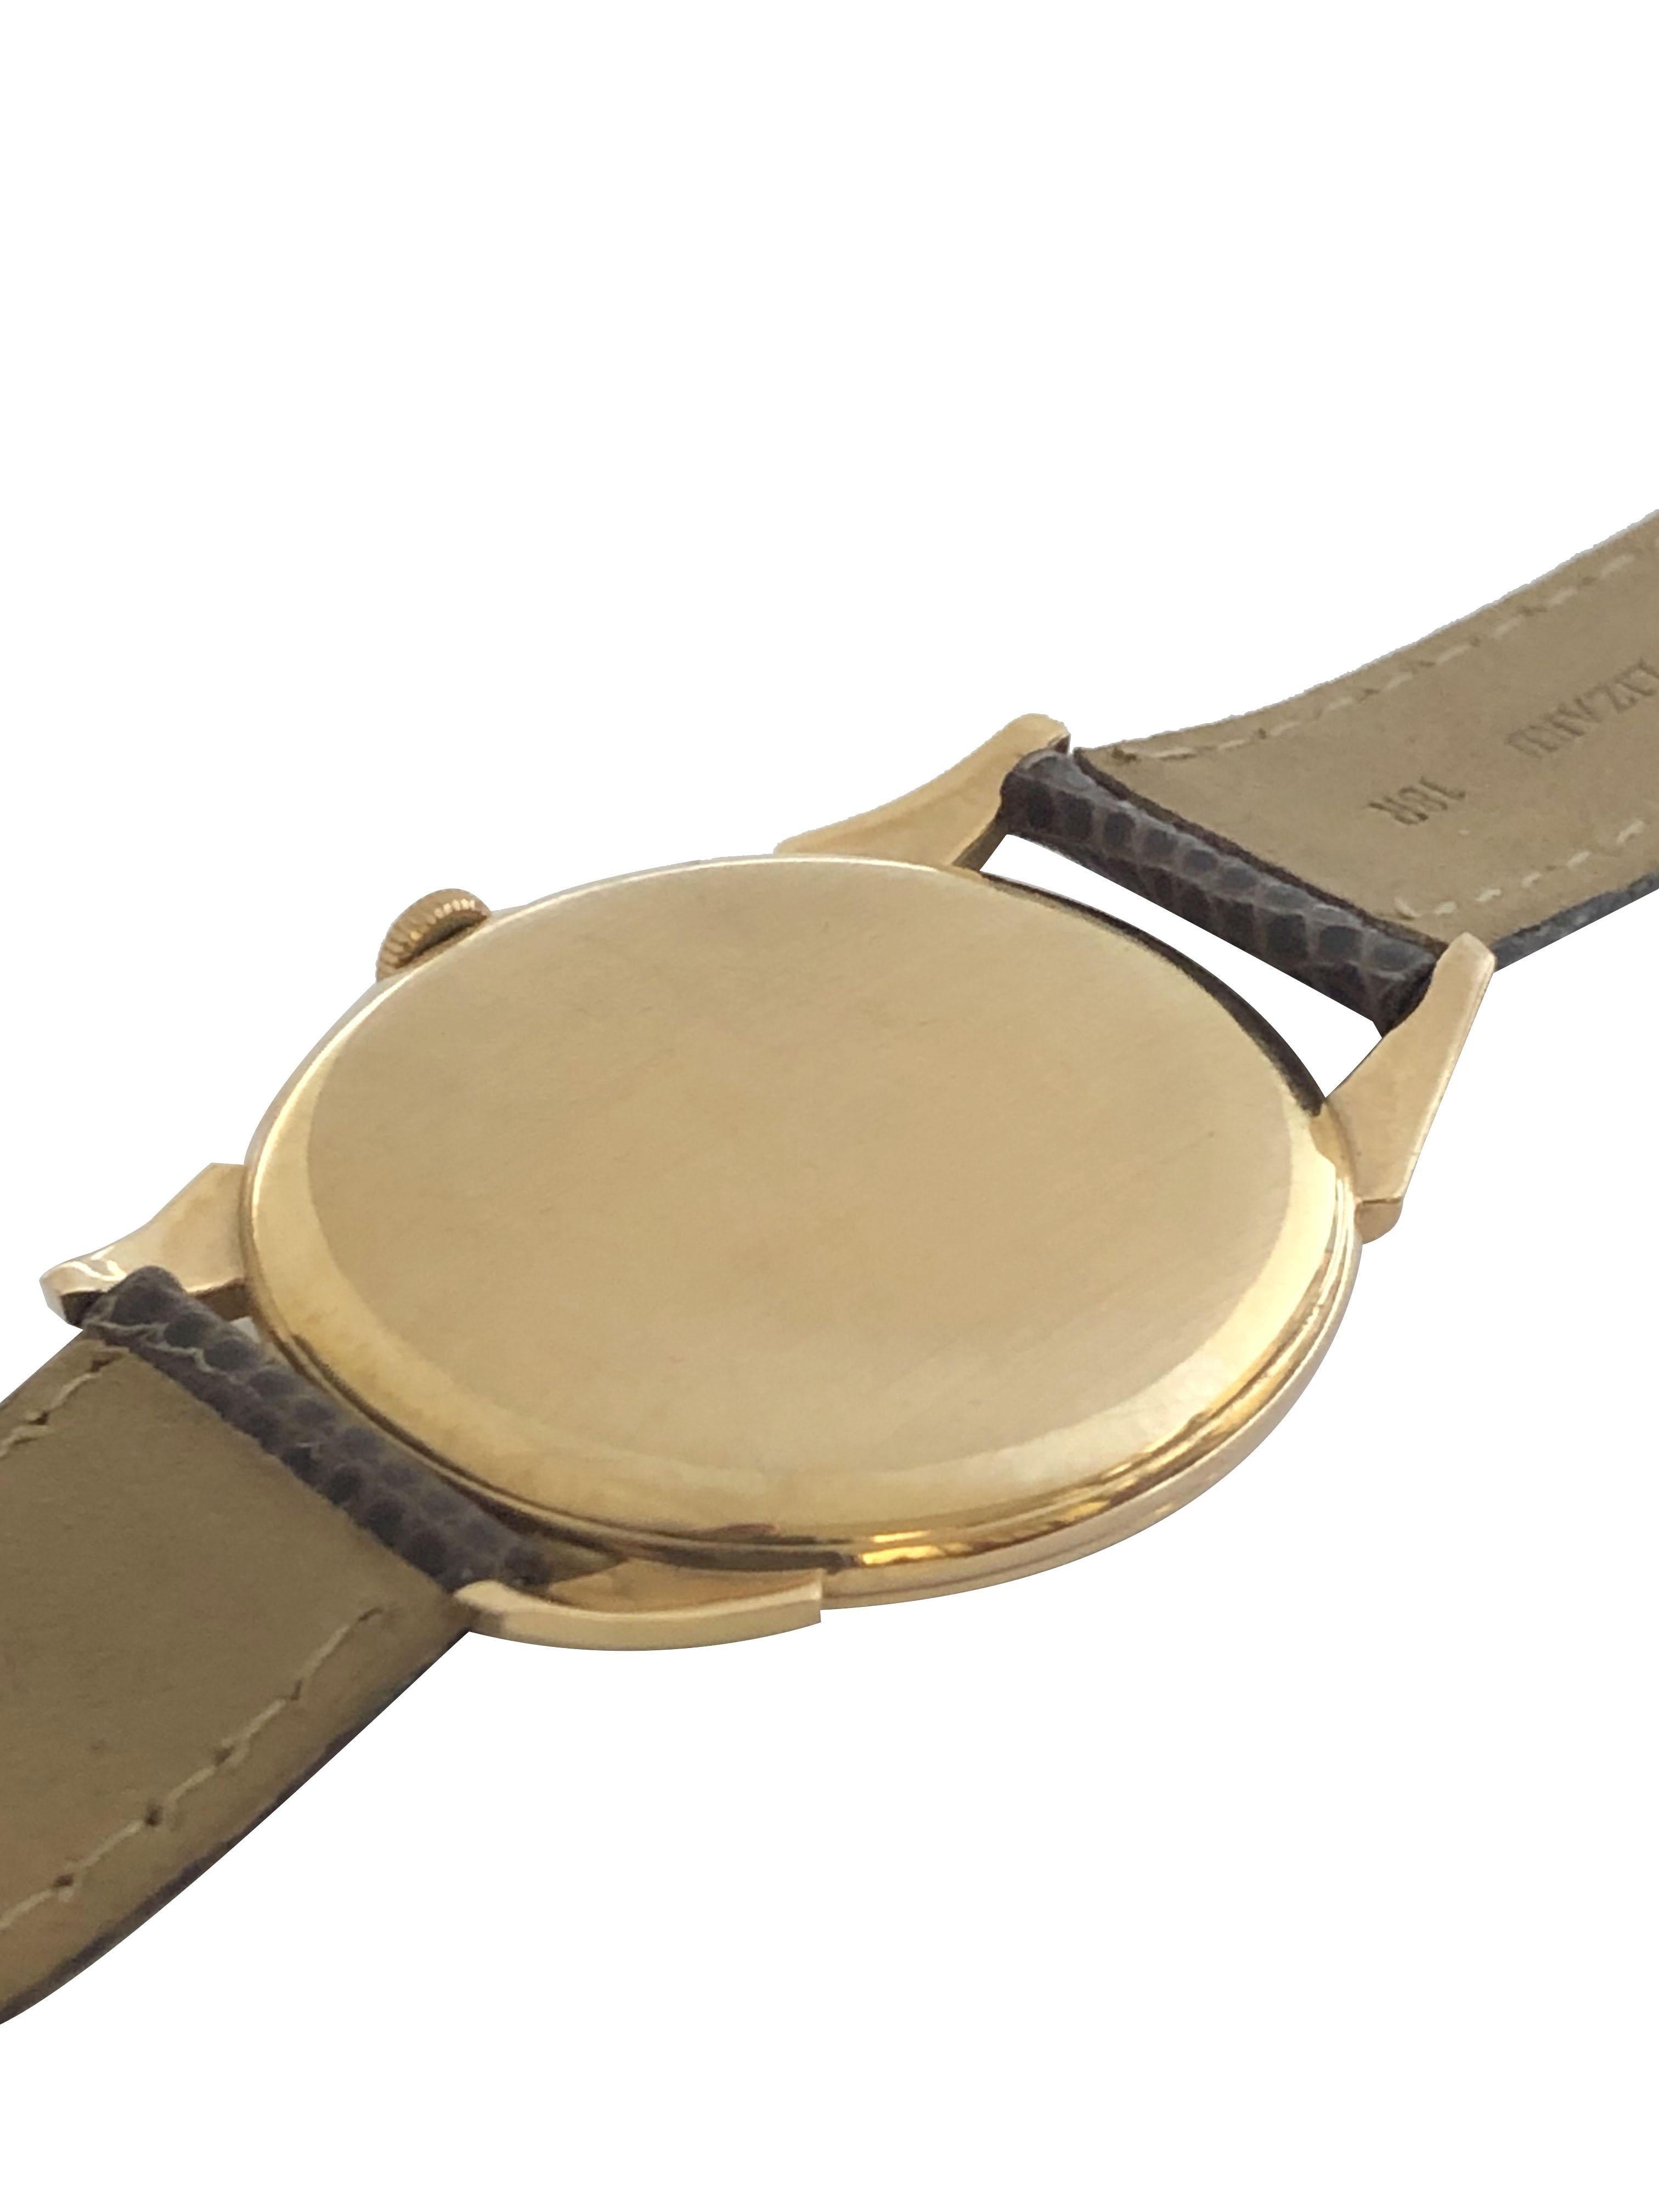 iwc schaffhausen gold watch